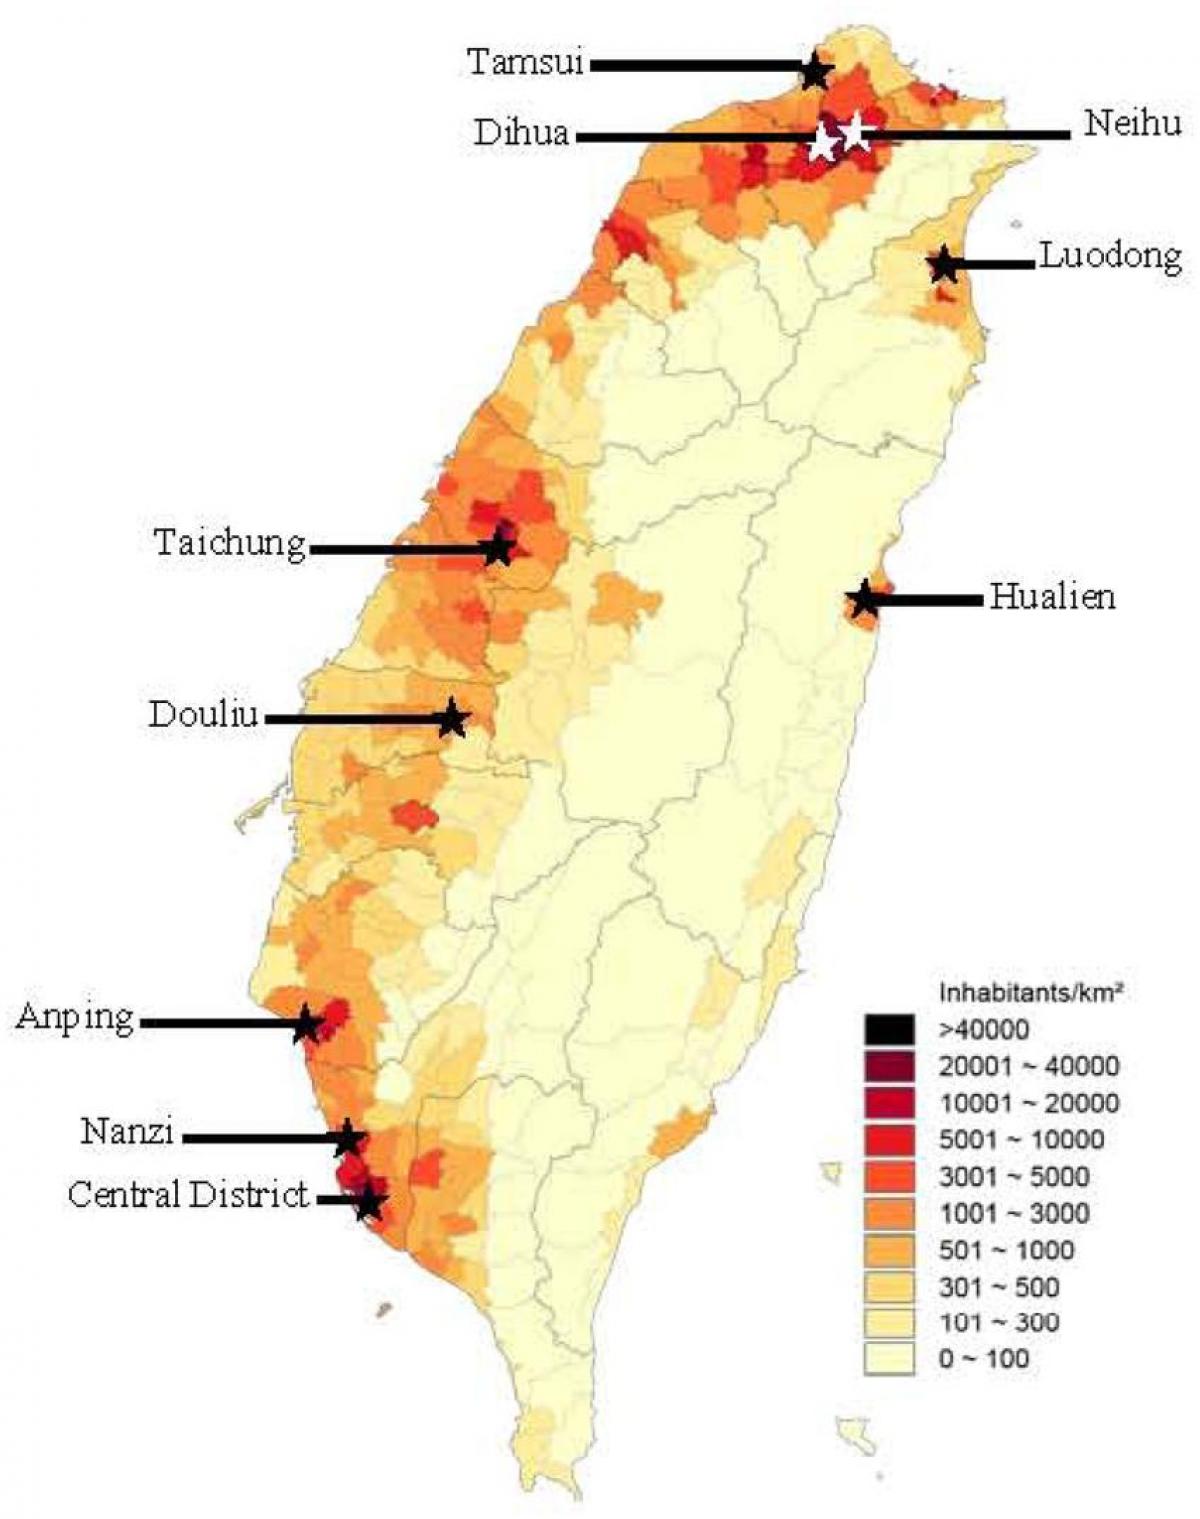 Taiwanin väestöntiheys kartta